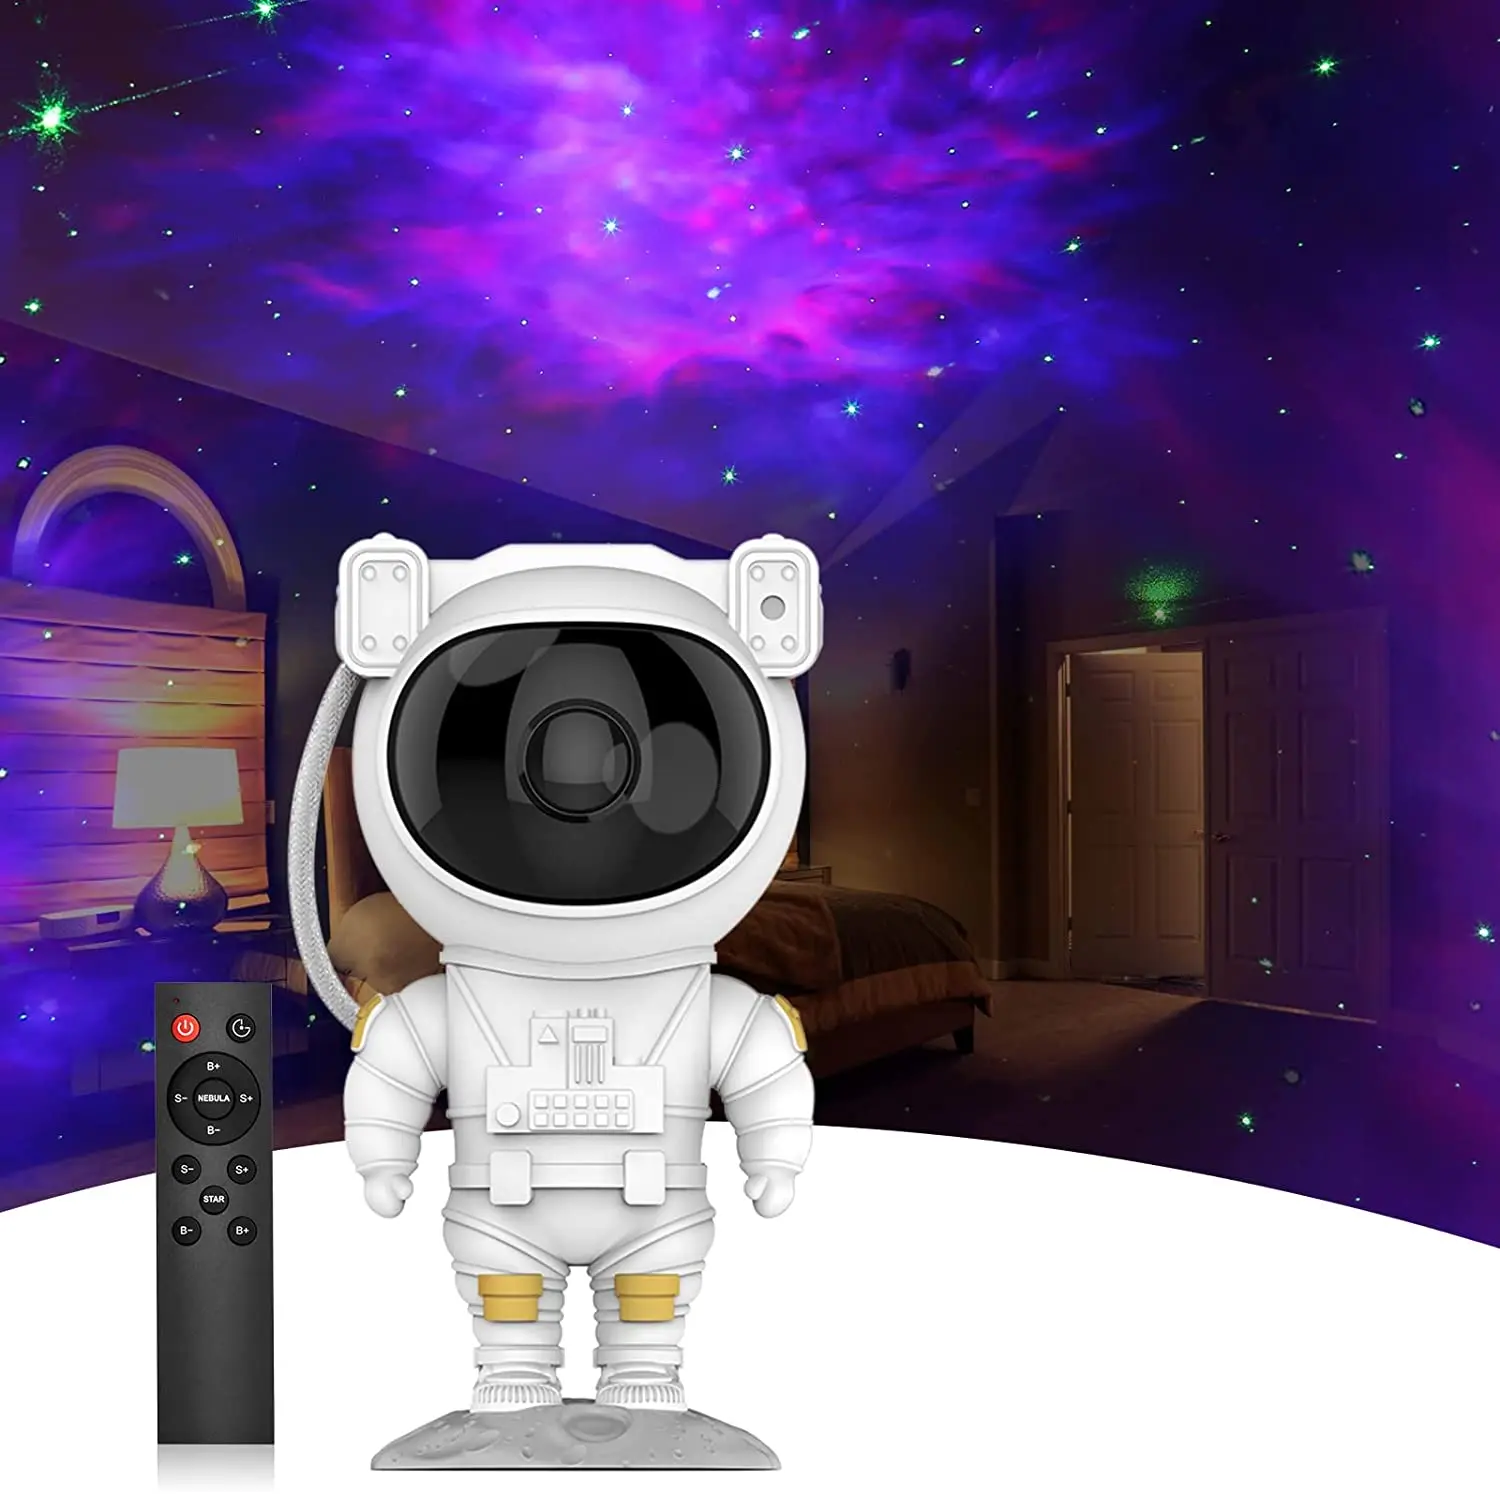 

проектор звездного неба Астронавт галактика Звездный проектор ночной свет дети звездное небо таймер дистанционное управление лампа для де...